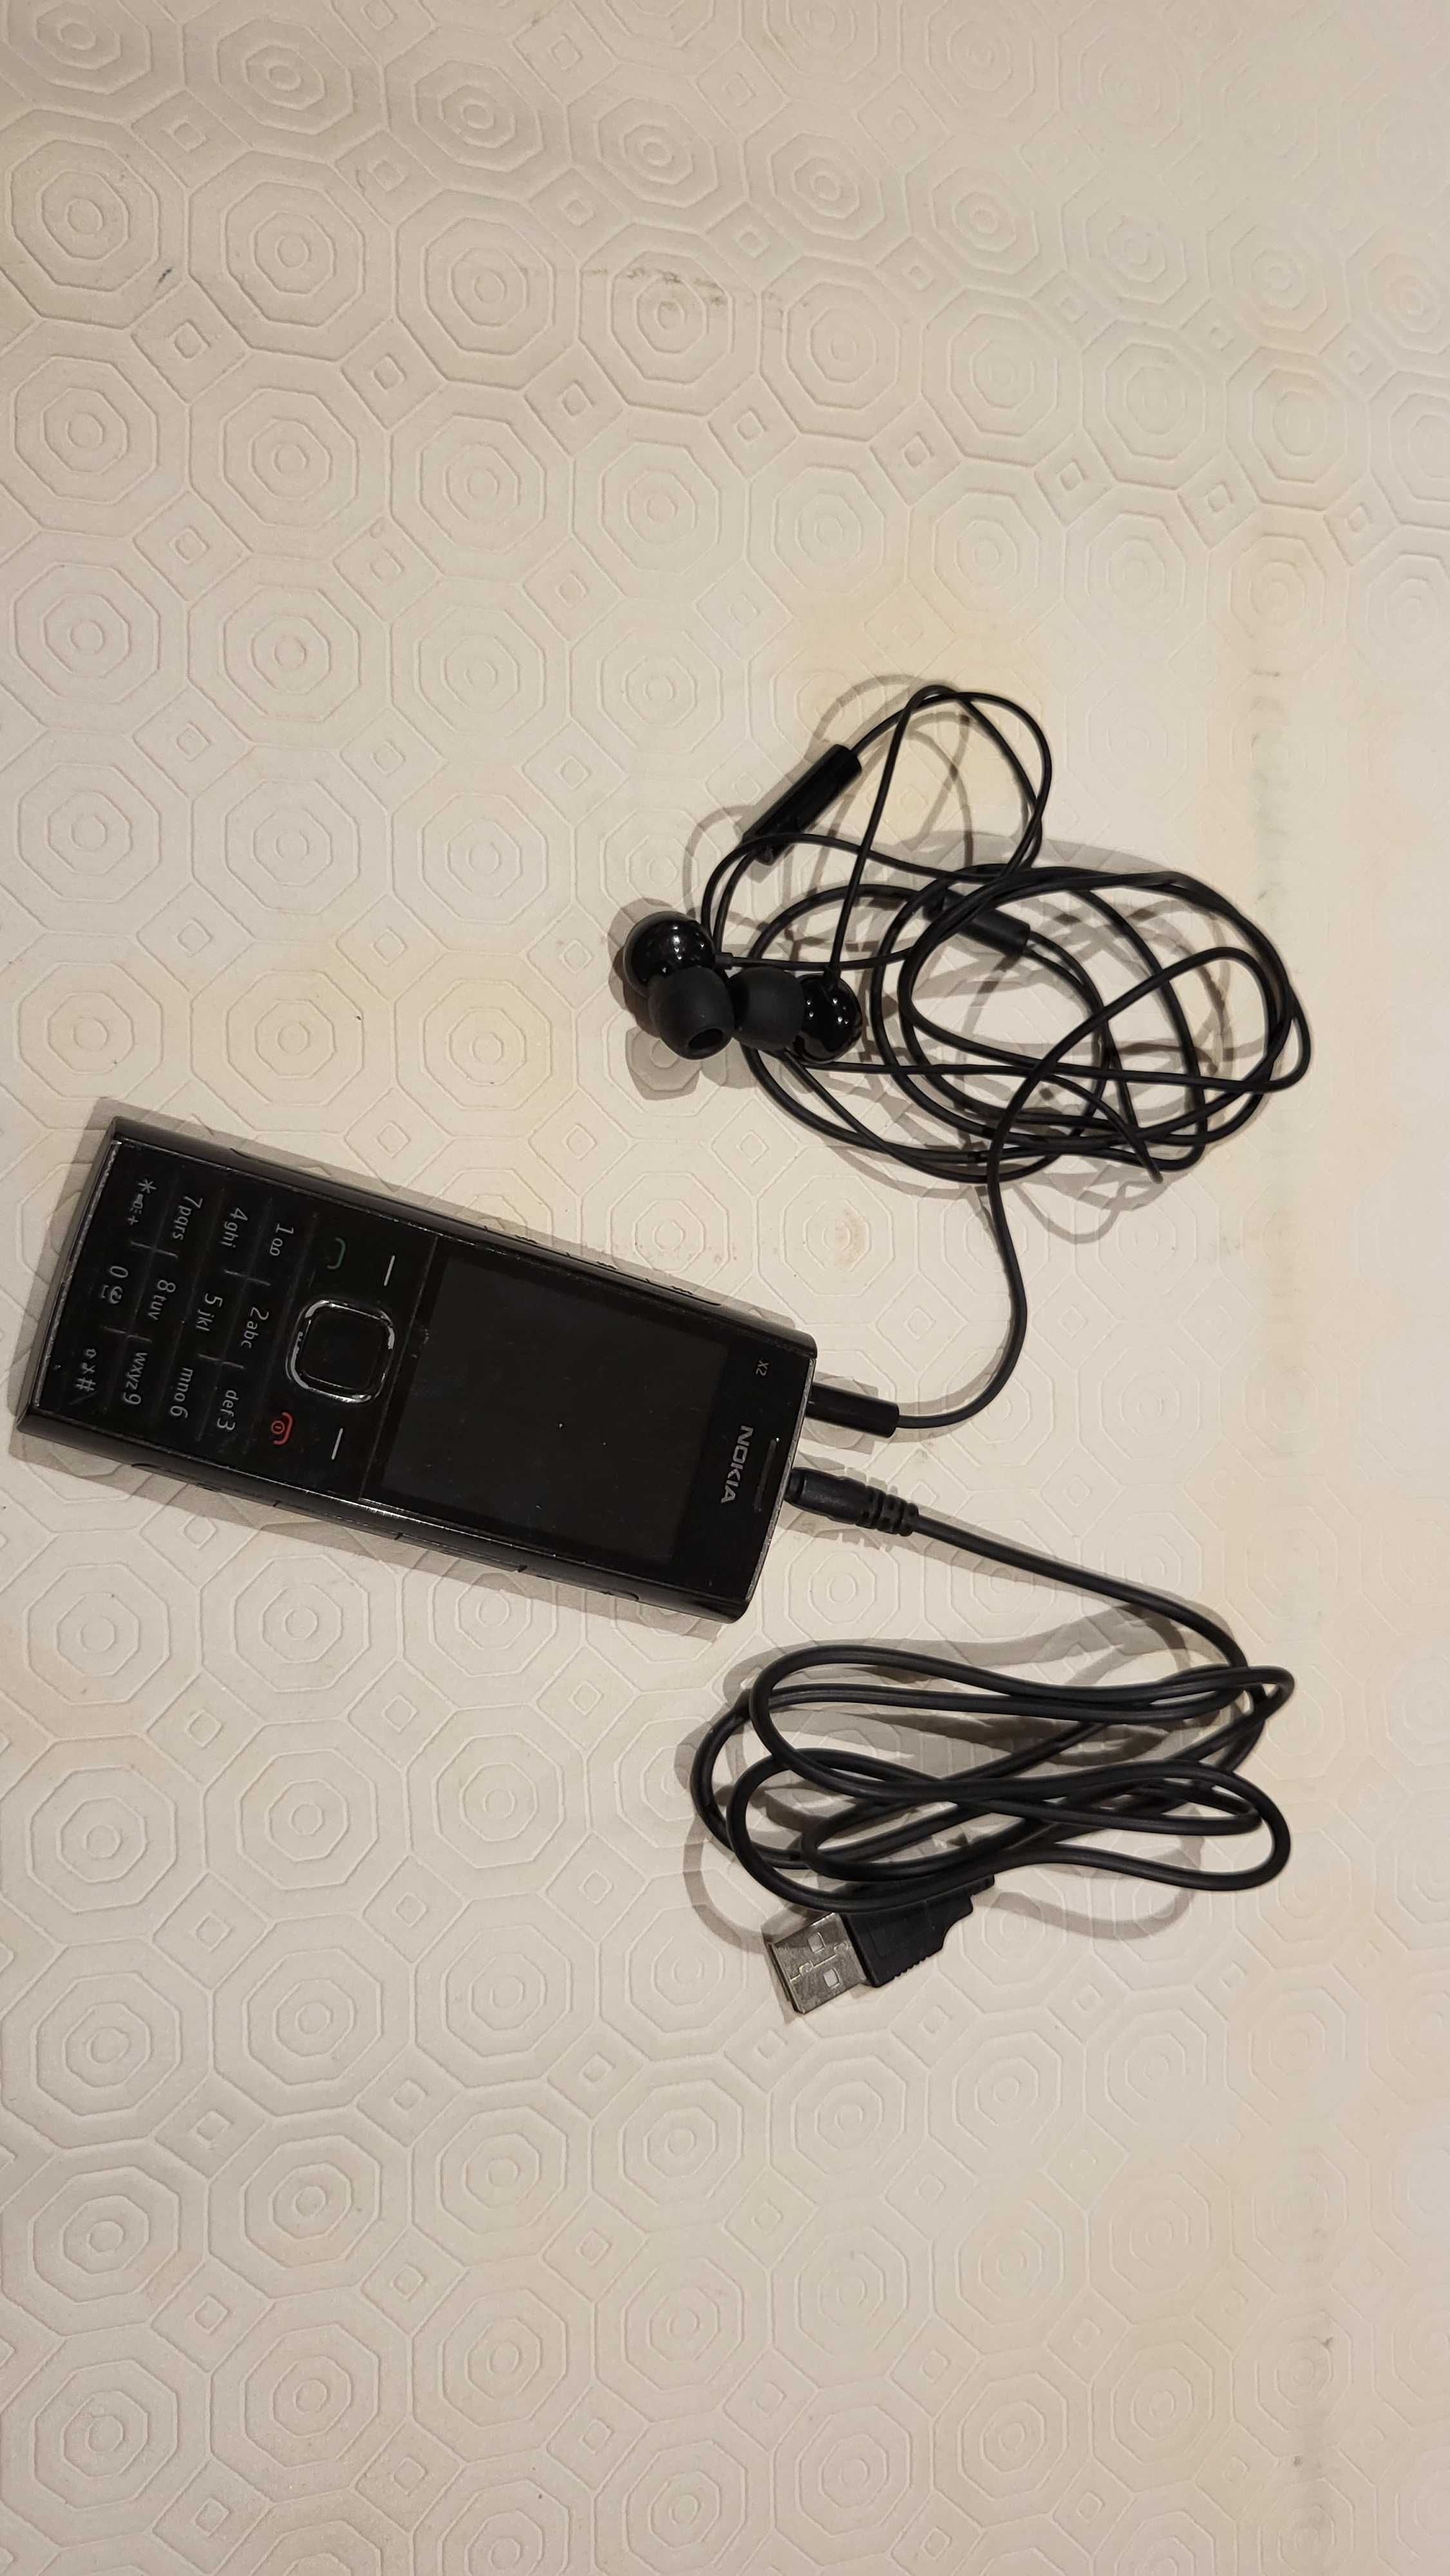 Nokia X2 com auricular e cabo carregamento